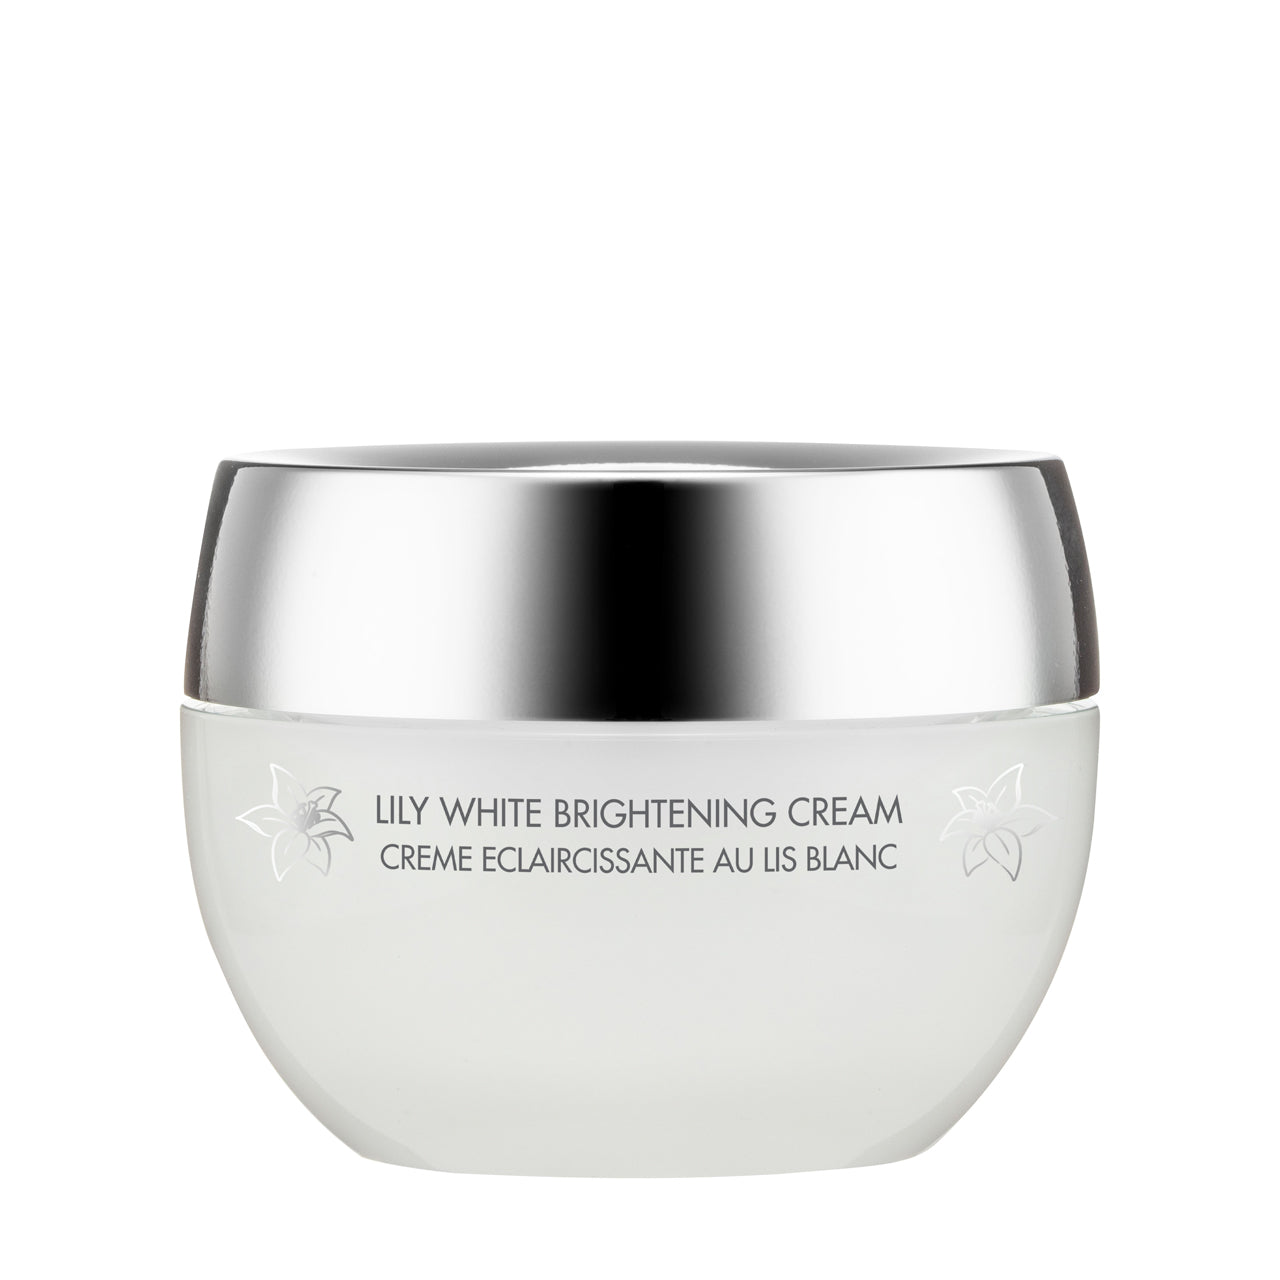 Methode Swiss Lily White Brightening Cream 50ML